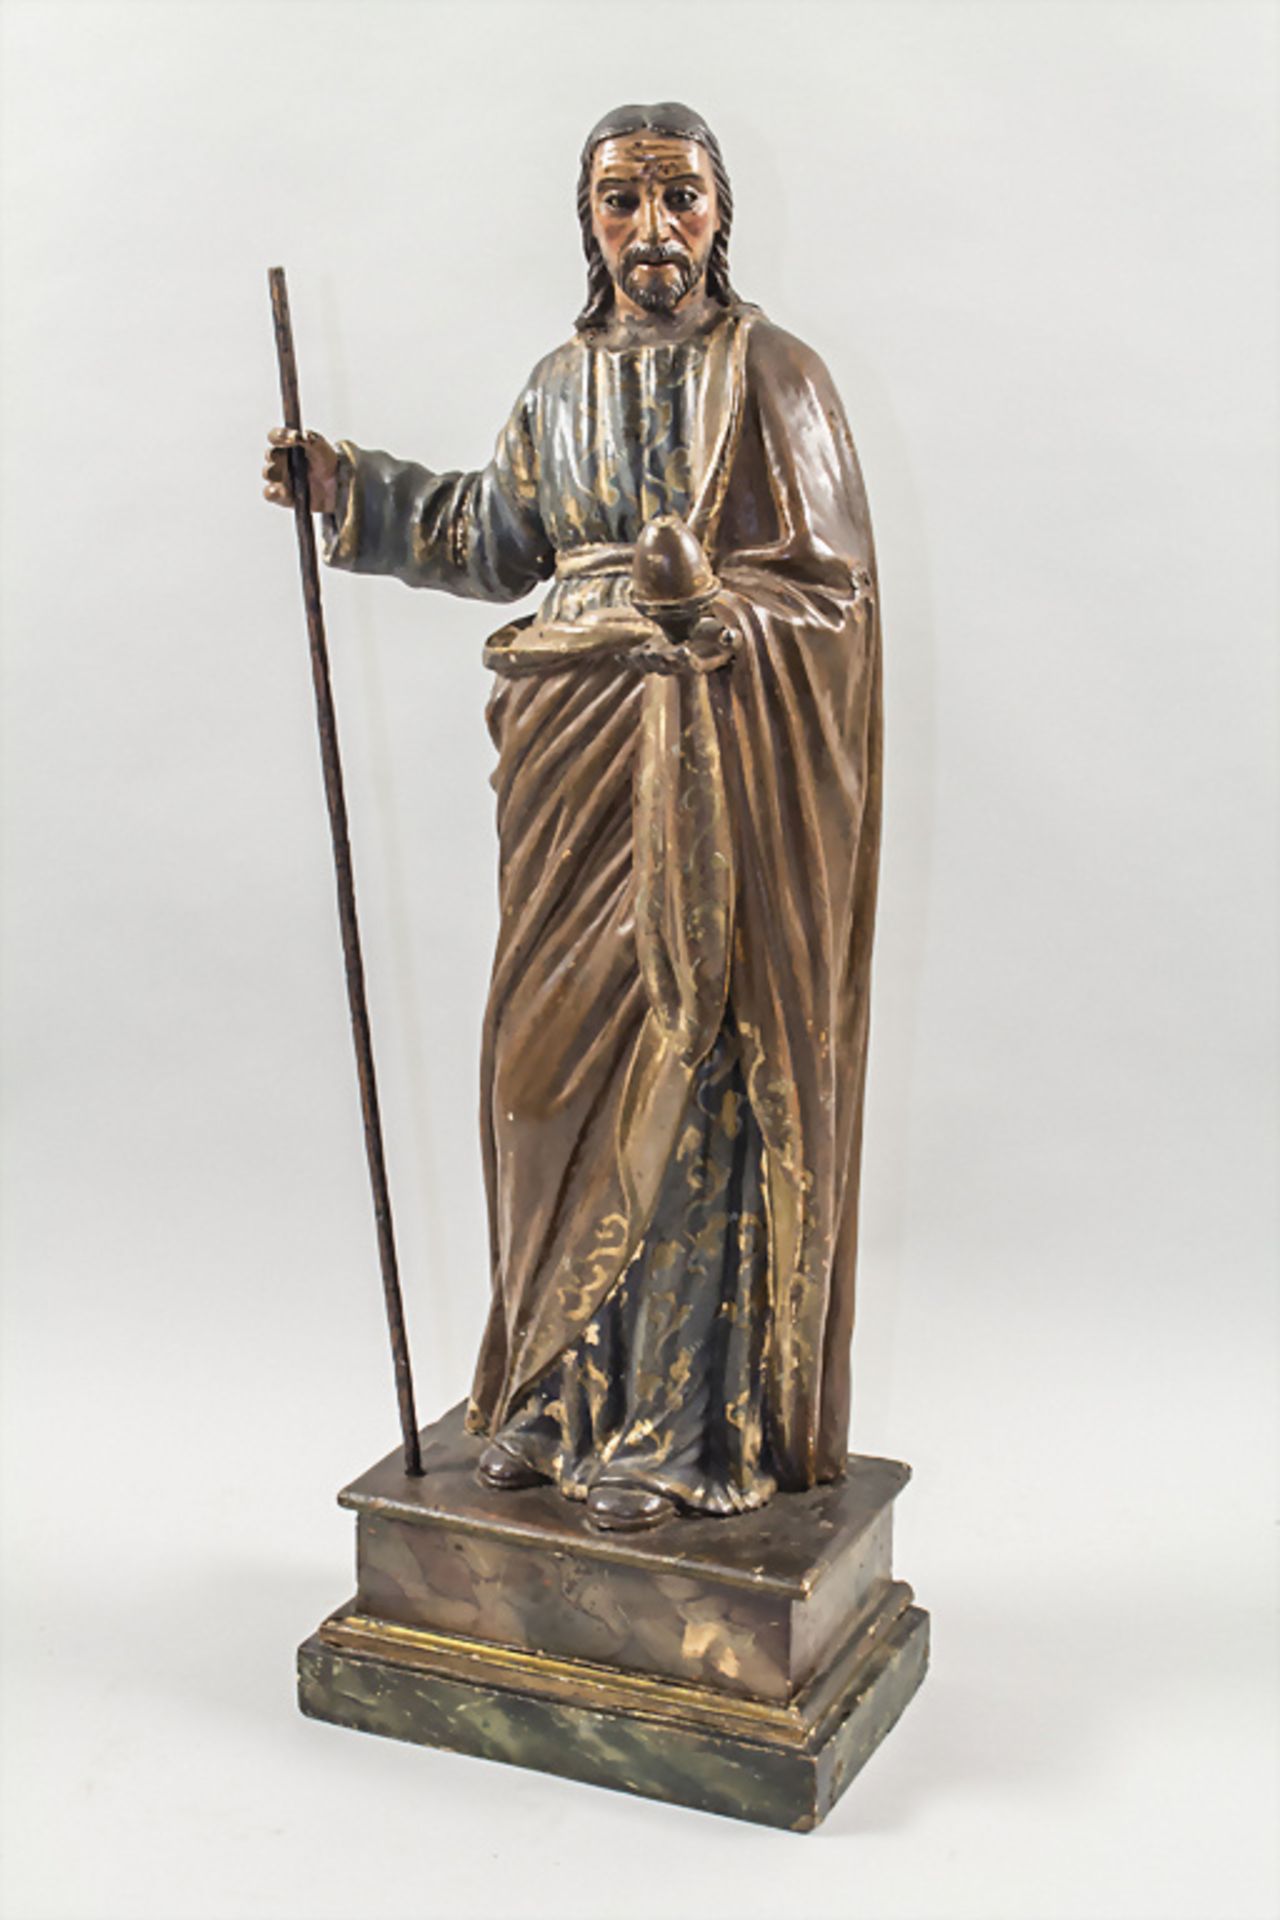 Holzskulptur 'Jesus' / A wooden sculpture depicting Jesus, Italien, 18./19. Jh.